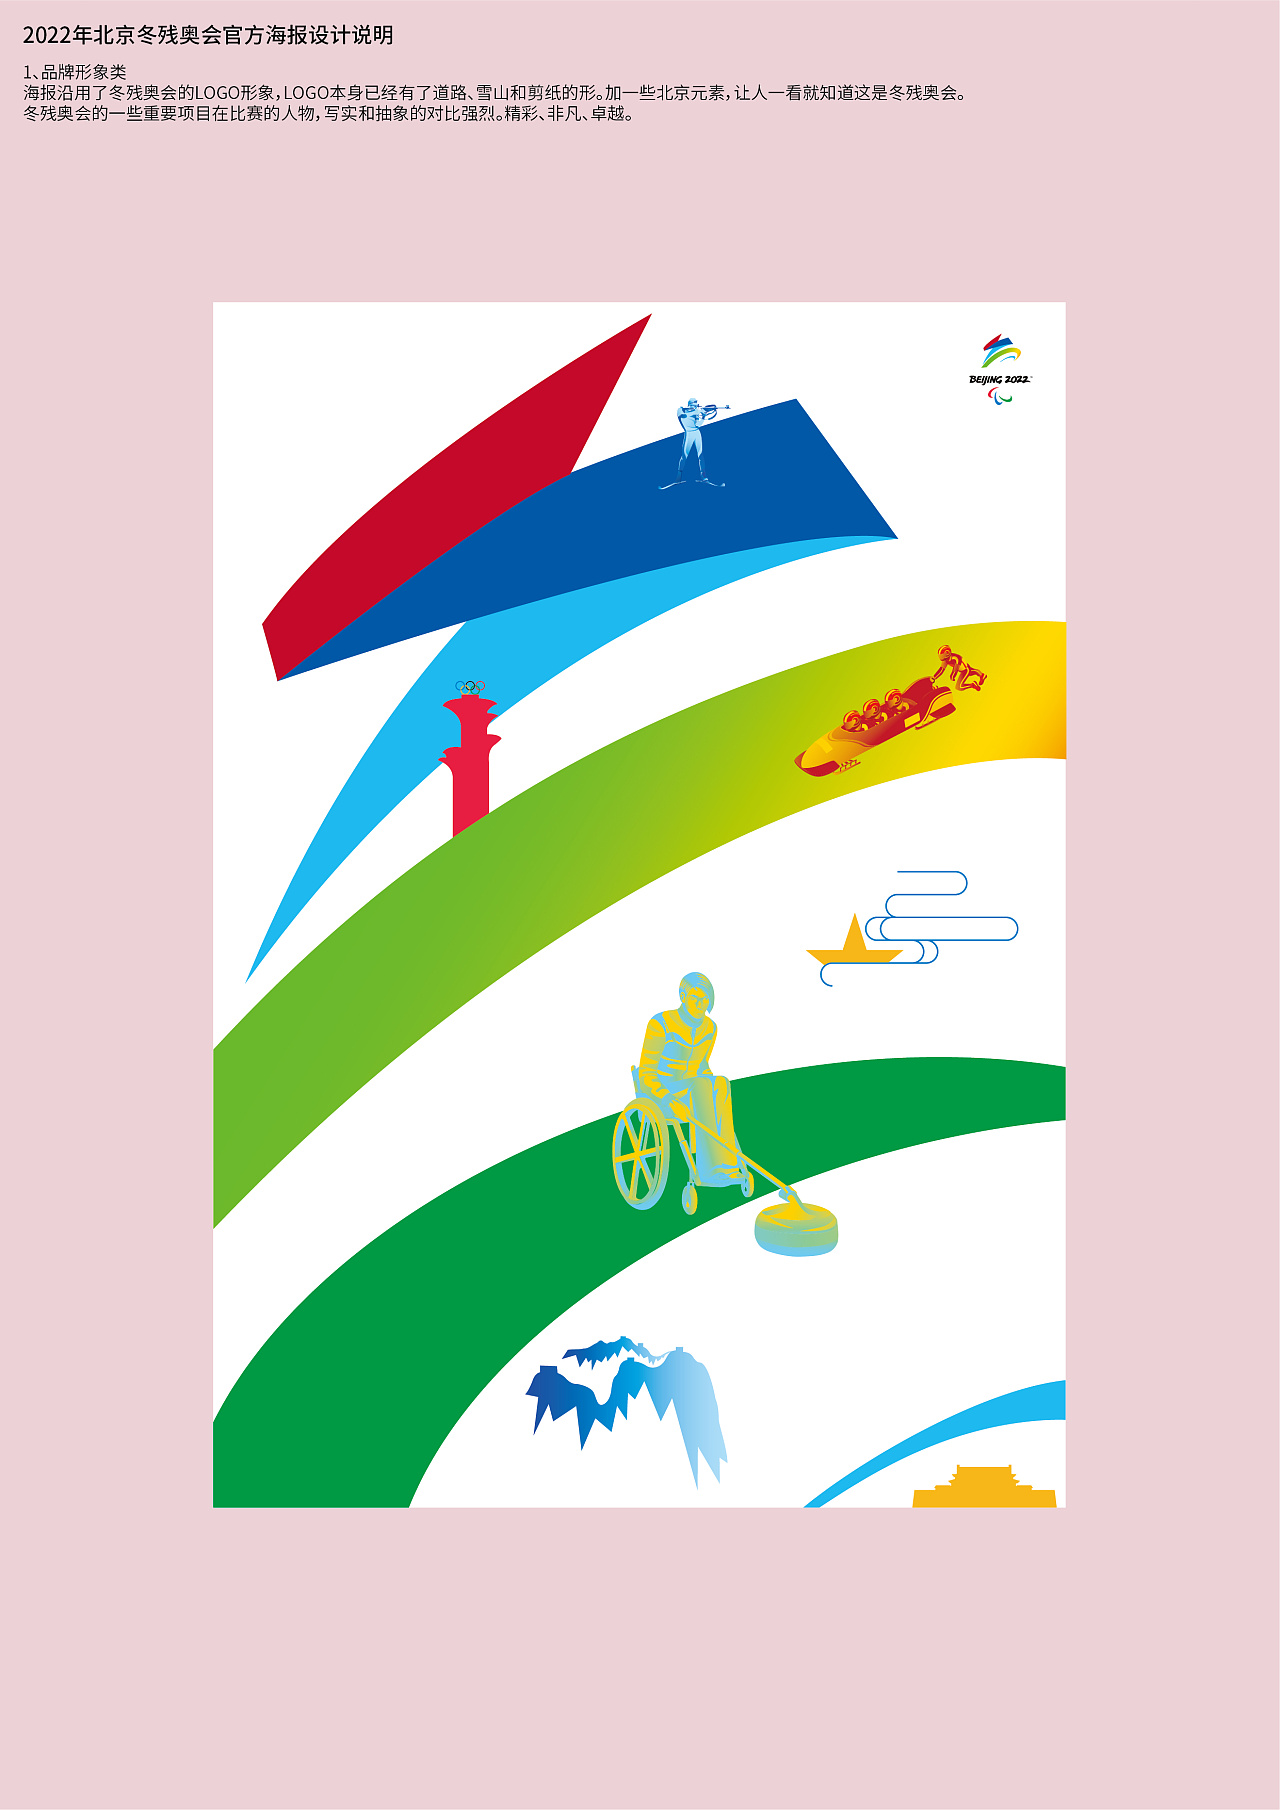 冬奥项目海报图片